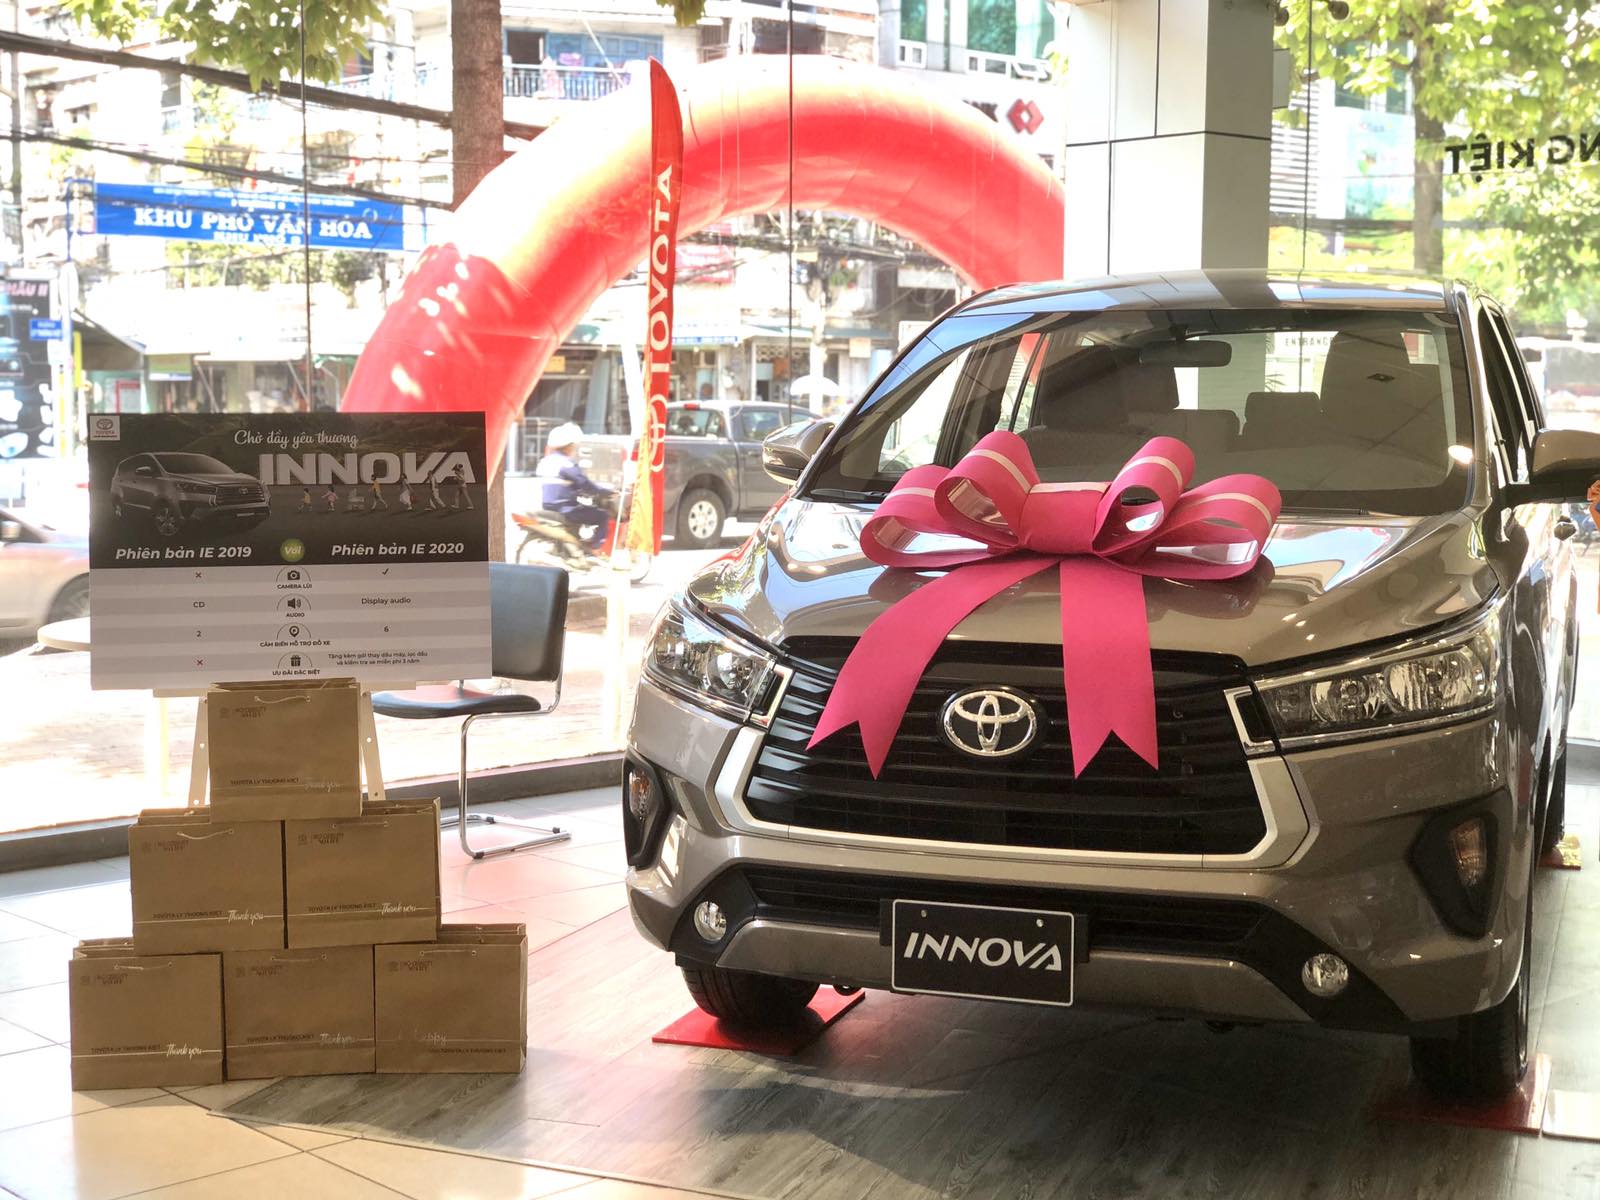 You are currently viewing Tân trang xe Toyota Innova 2021 với chương trình chăm sóc “xế yêu” vi vu ngày Tết